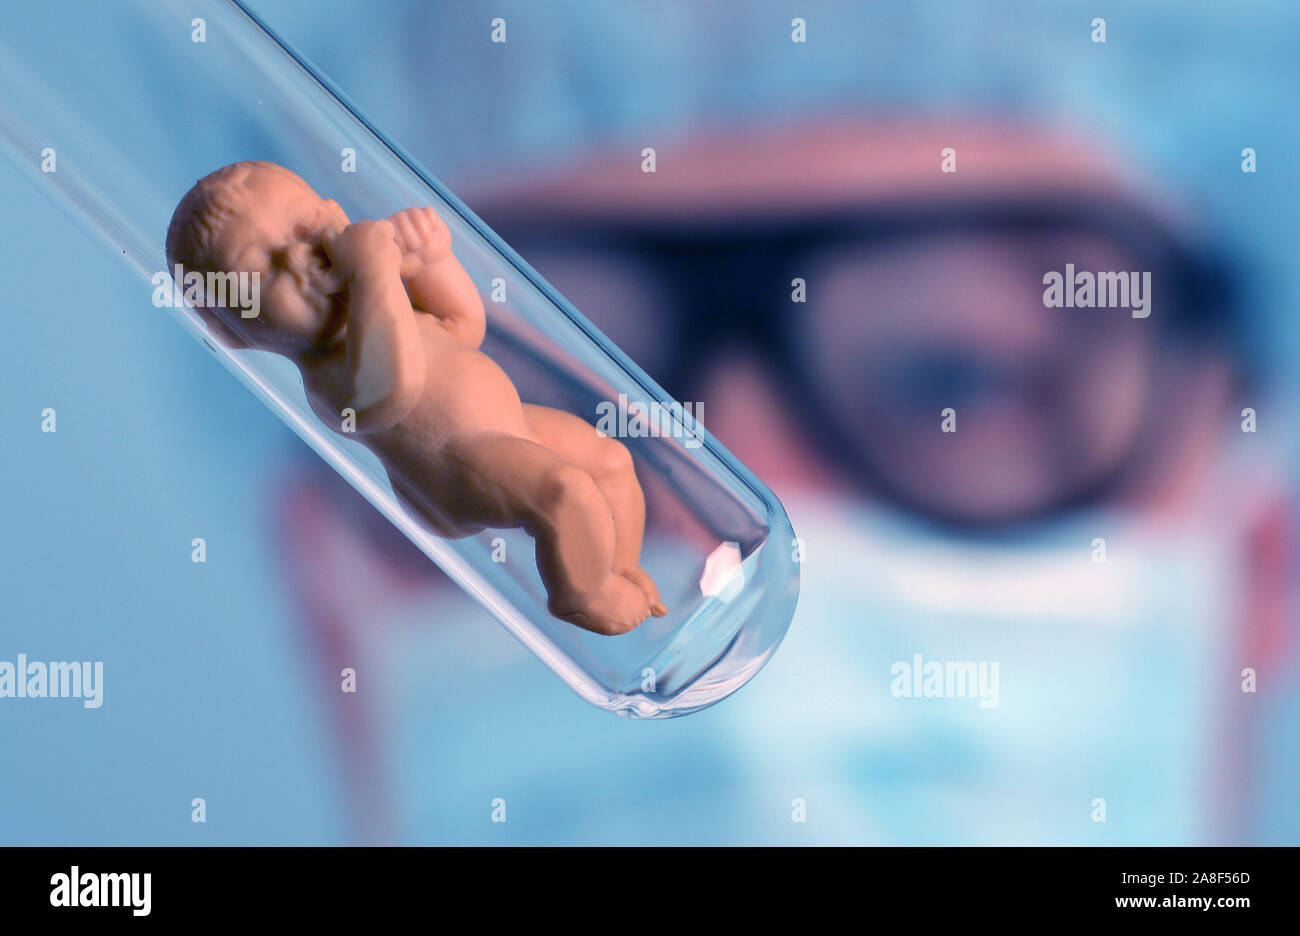 Retortenbaby im Reagenzglas, Puppe, Kein signor erforderlich, Foto Stock